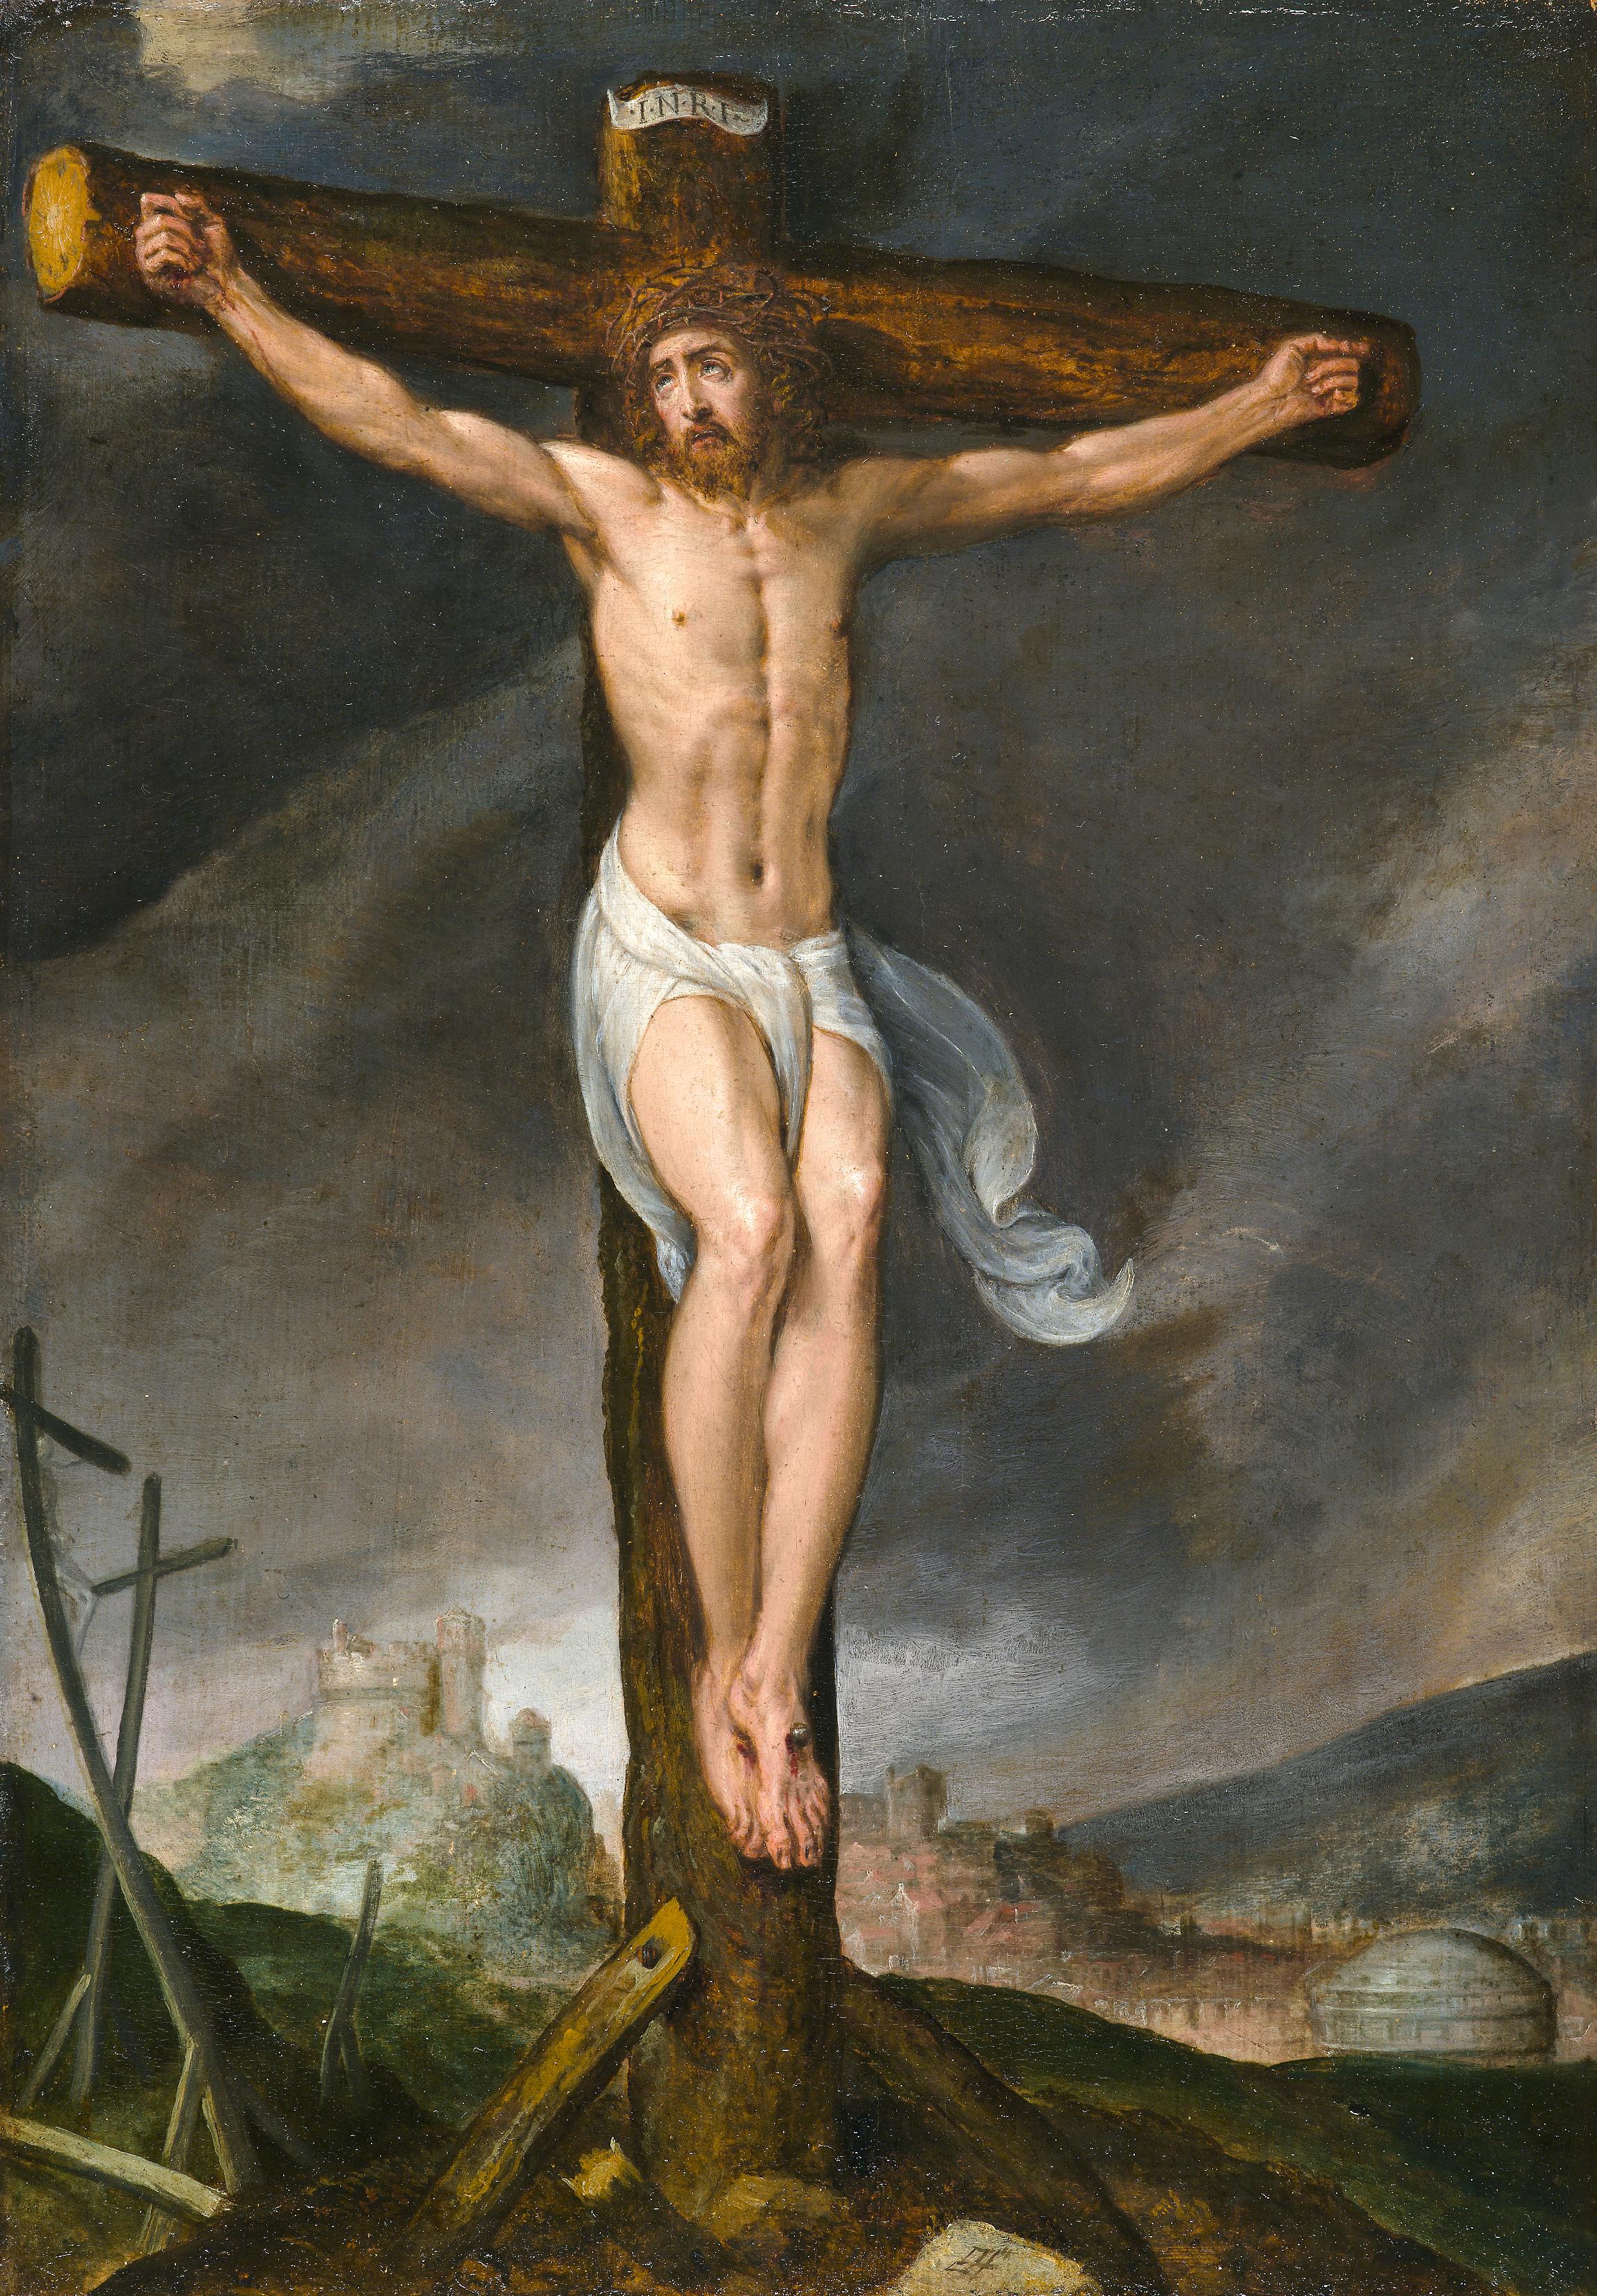 Die Kreuzigung – Painting von Flemish School, 17th Century